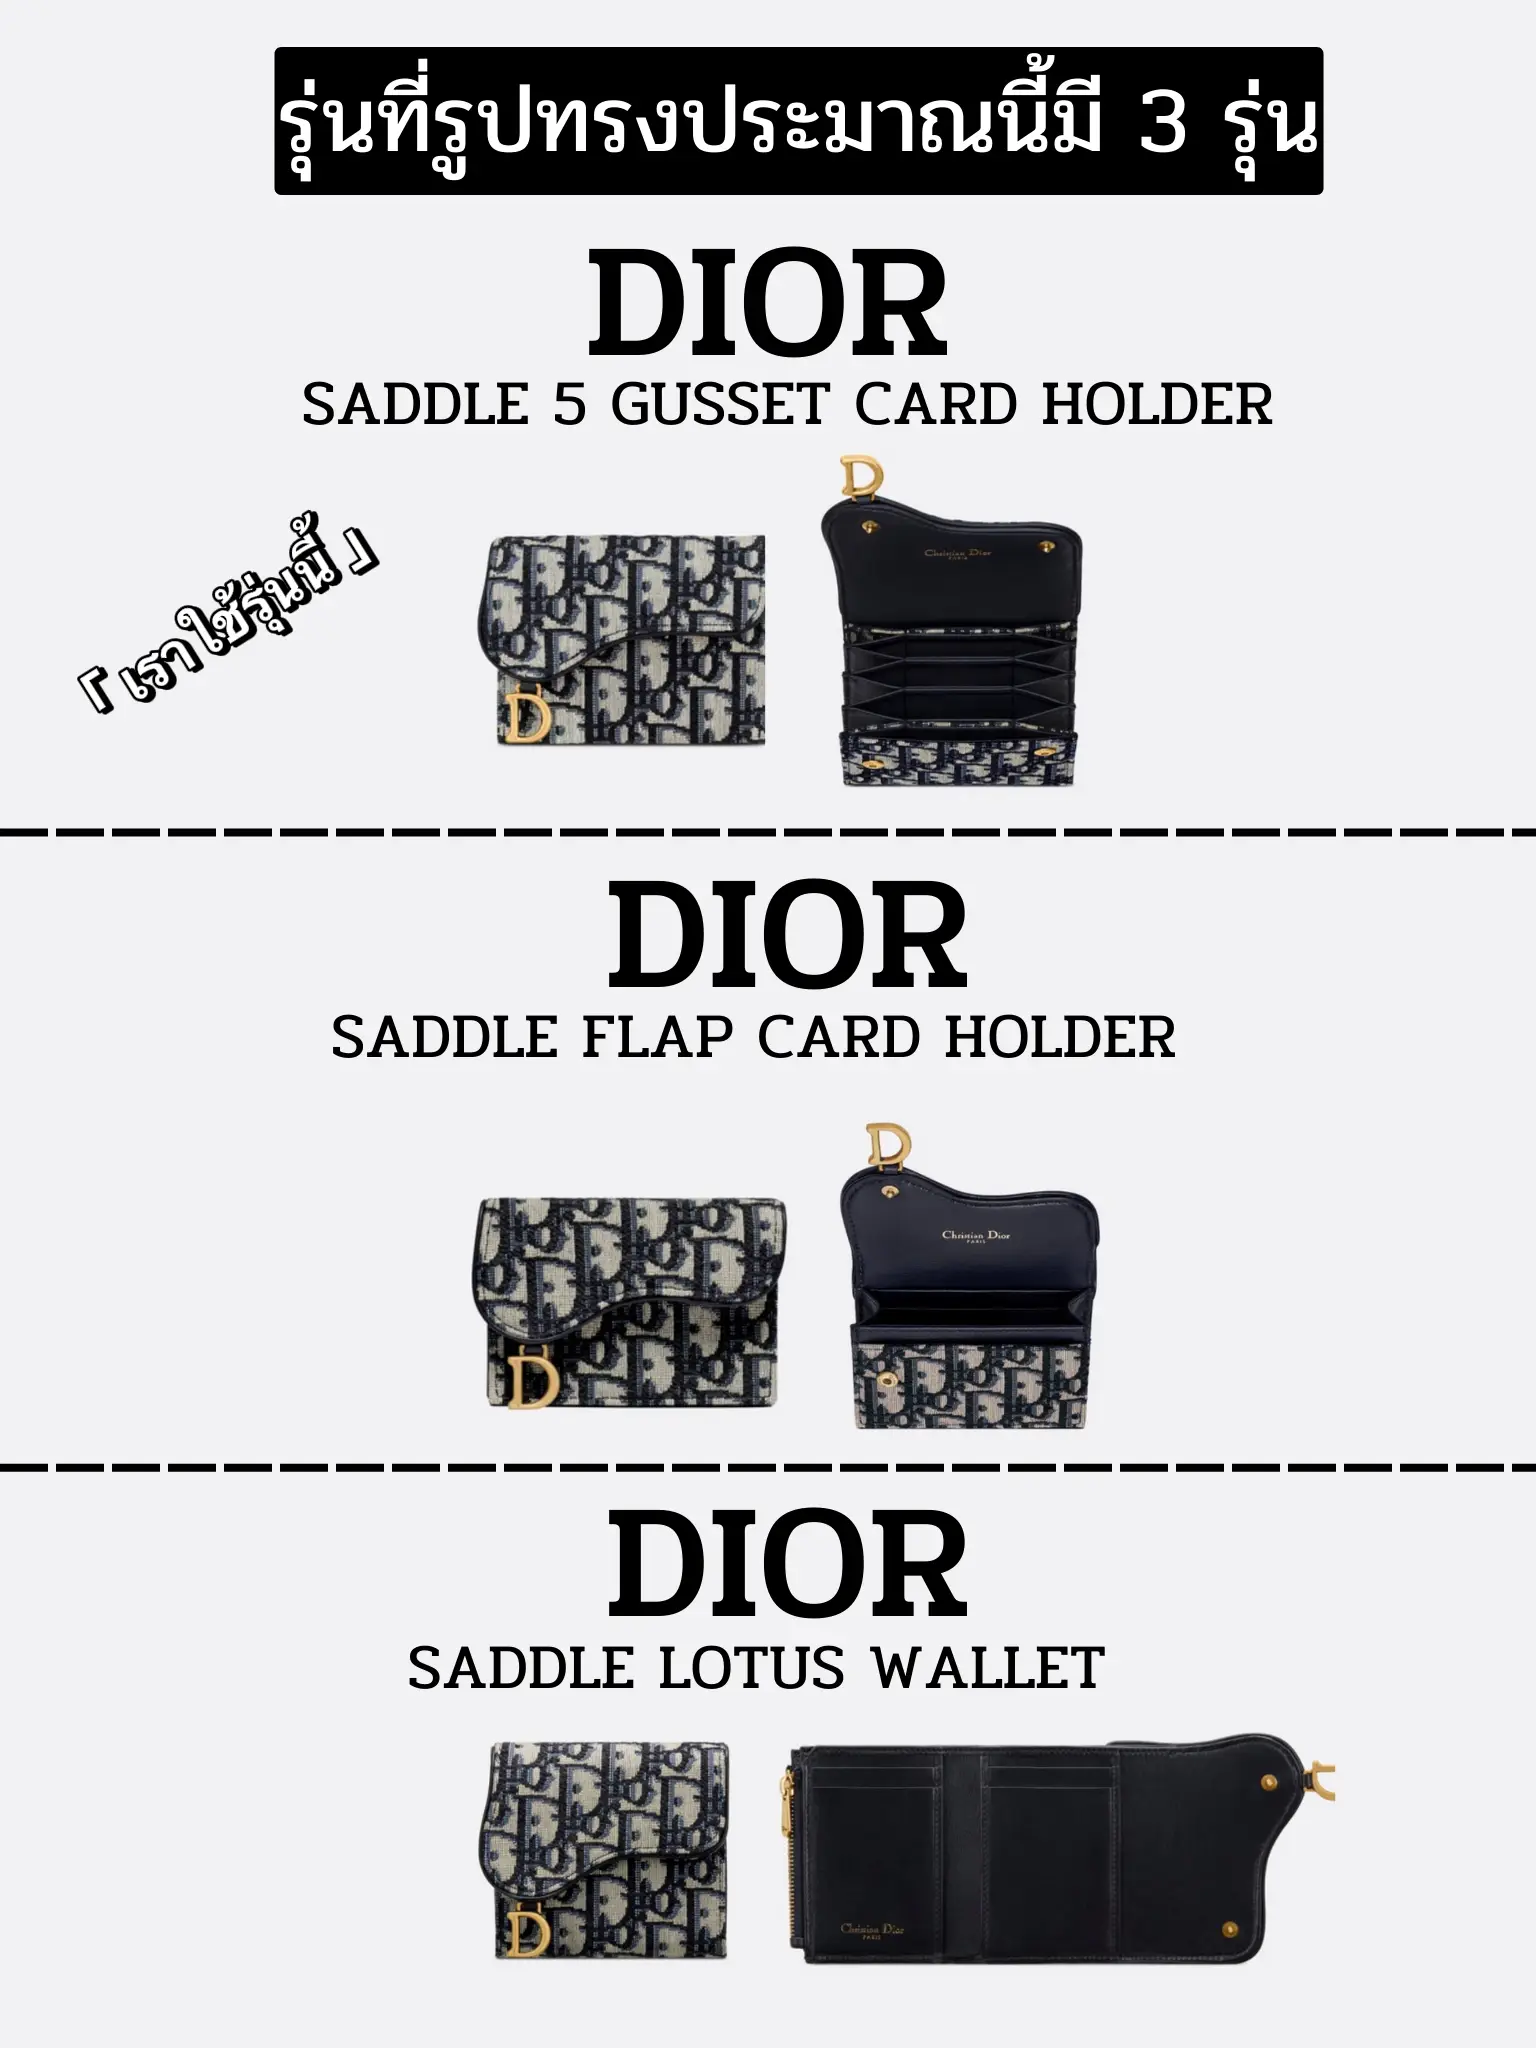 รูปภาพของ รีวิวหมดเปลือก Dior card holder ใช้แล้วดีจริงหรือแค่กระแส ? (1)